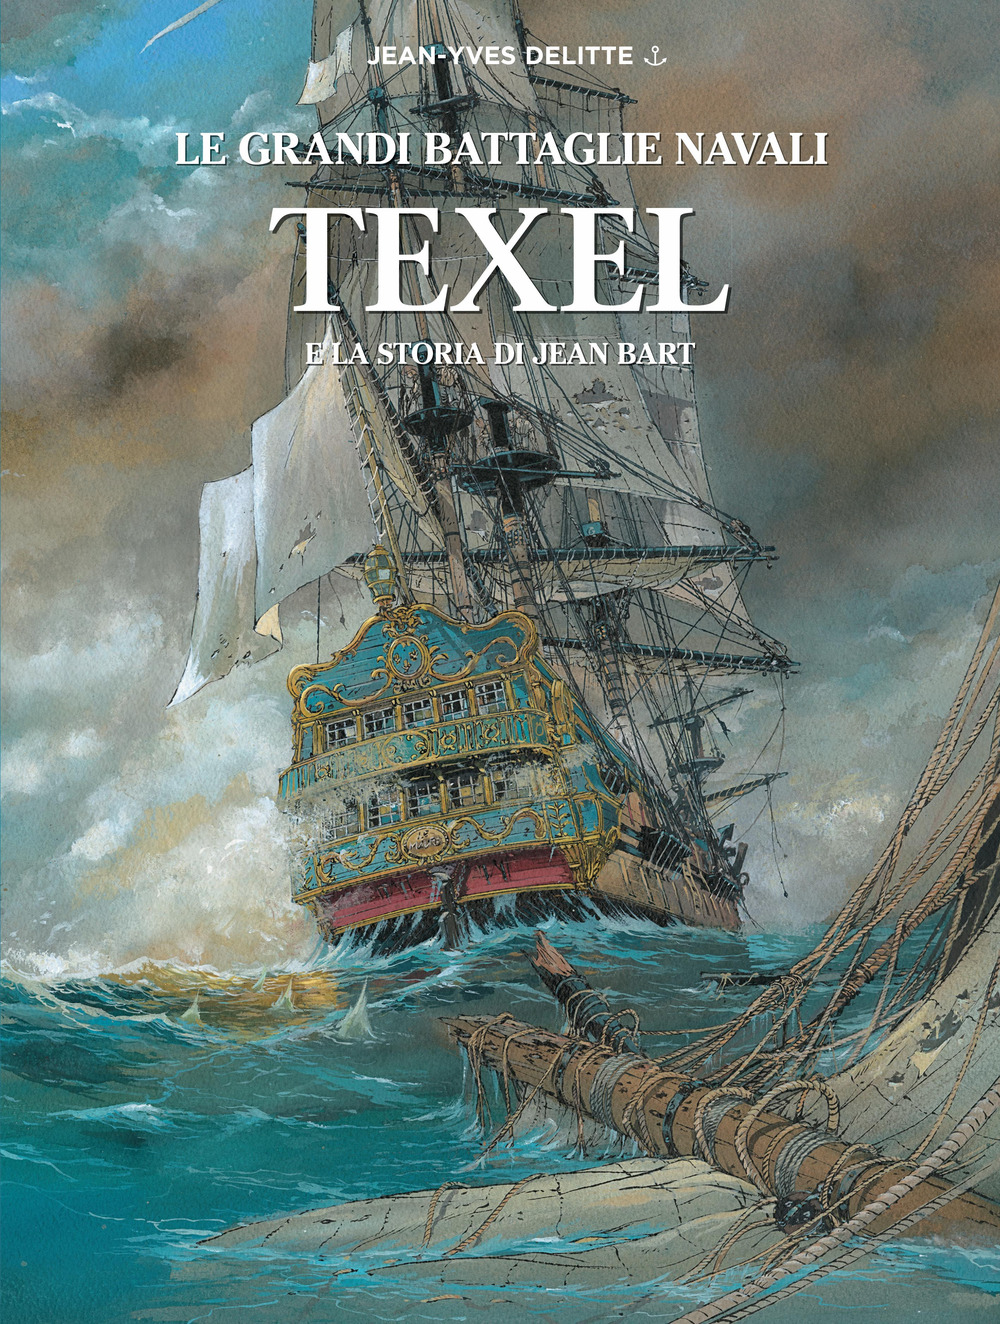 Texel e la storia di Jean Bart. Le grandi battaglie navali